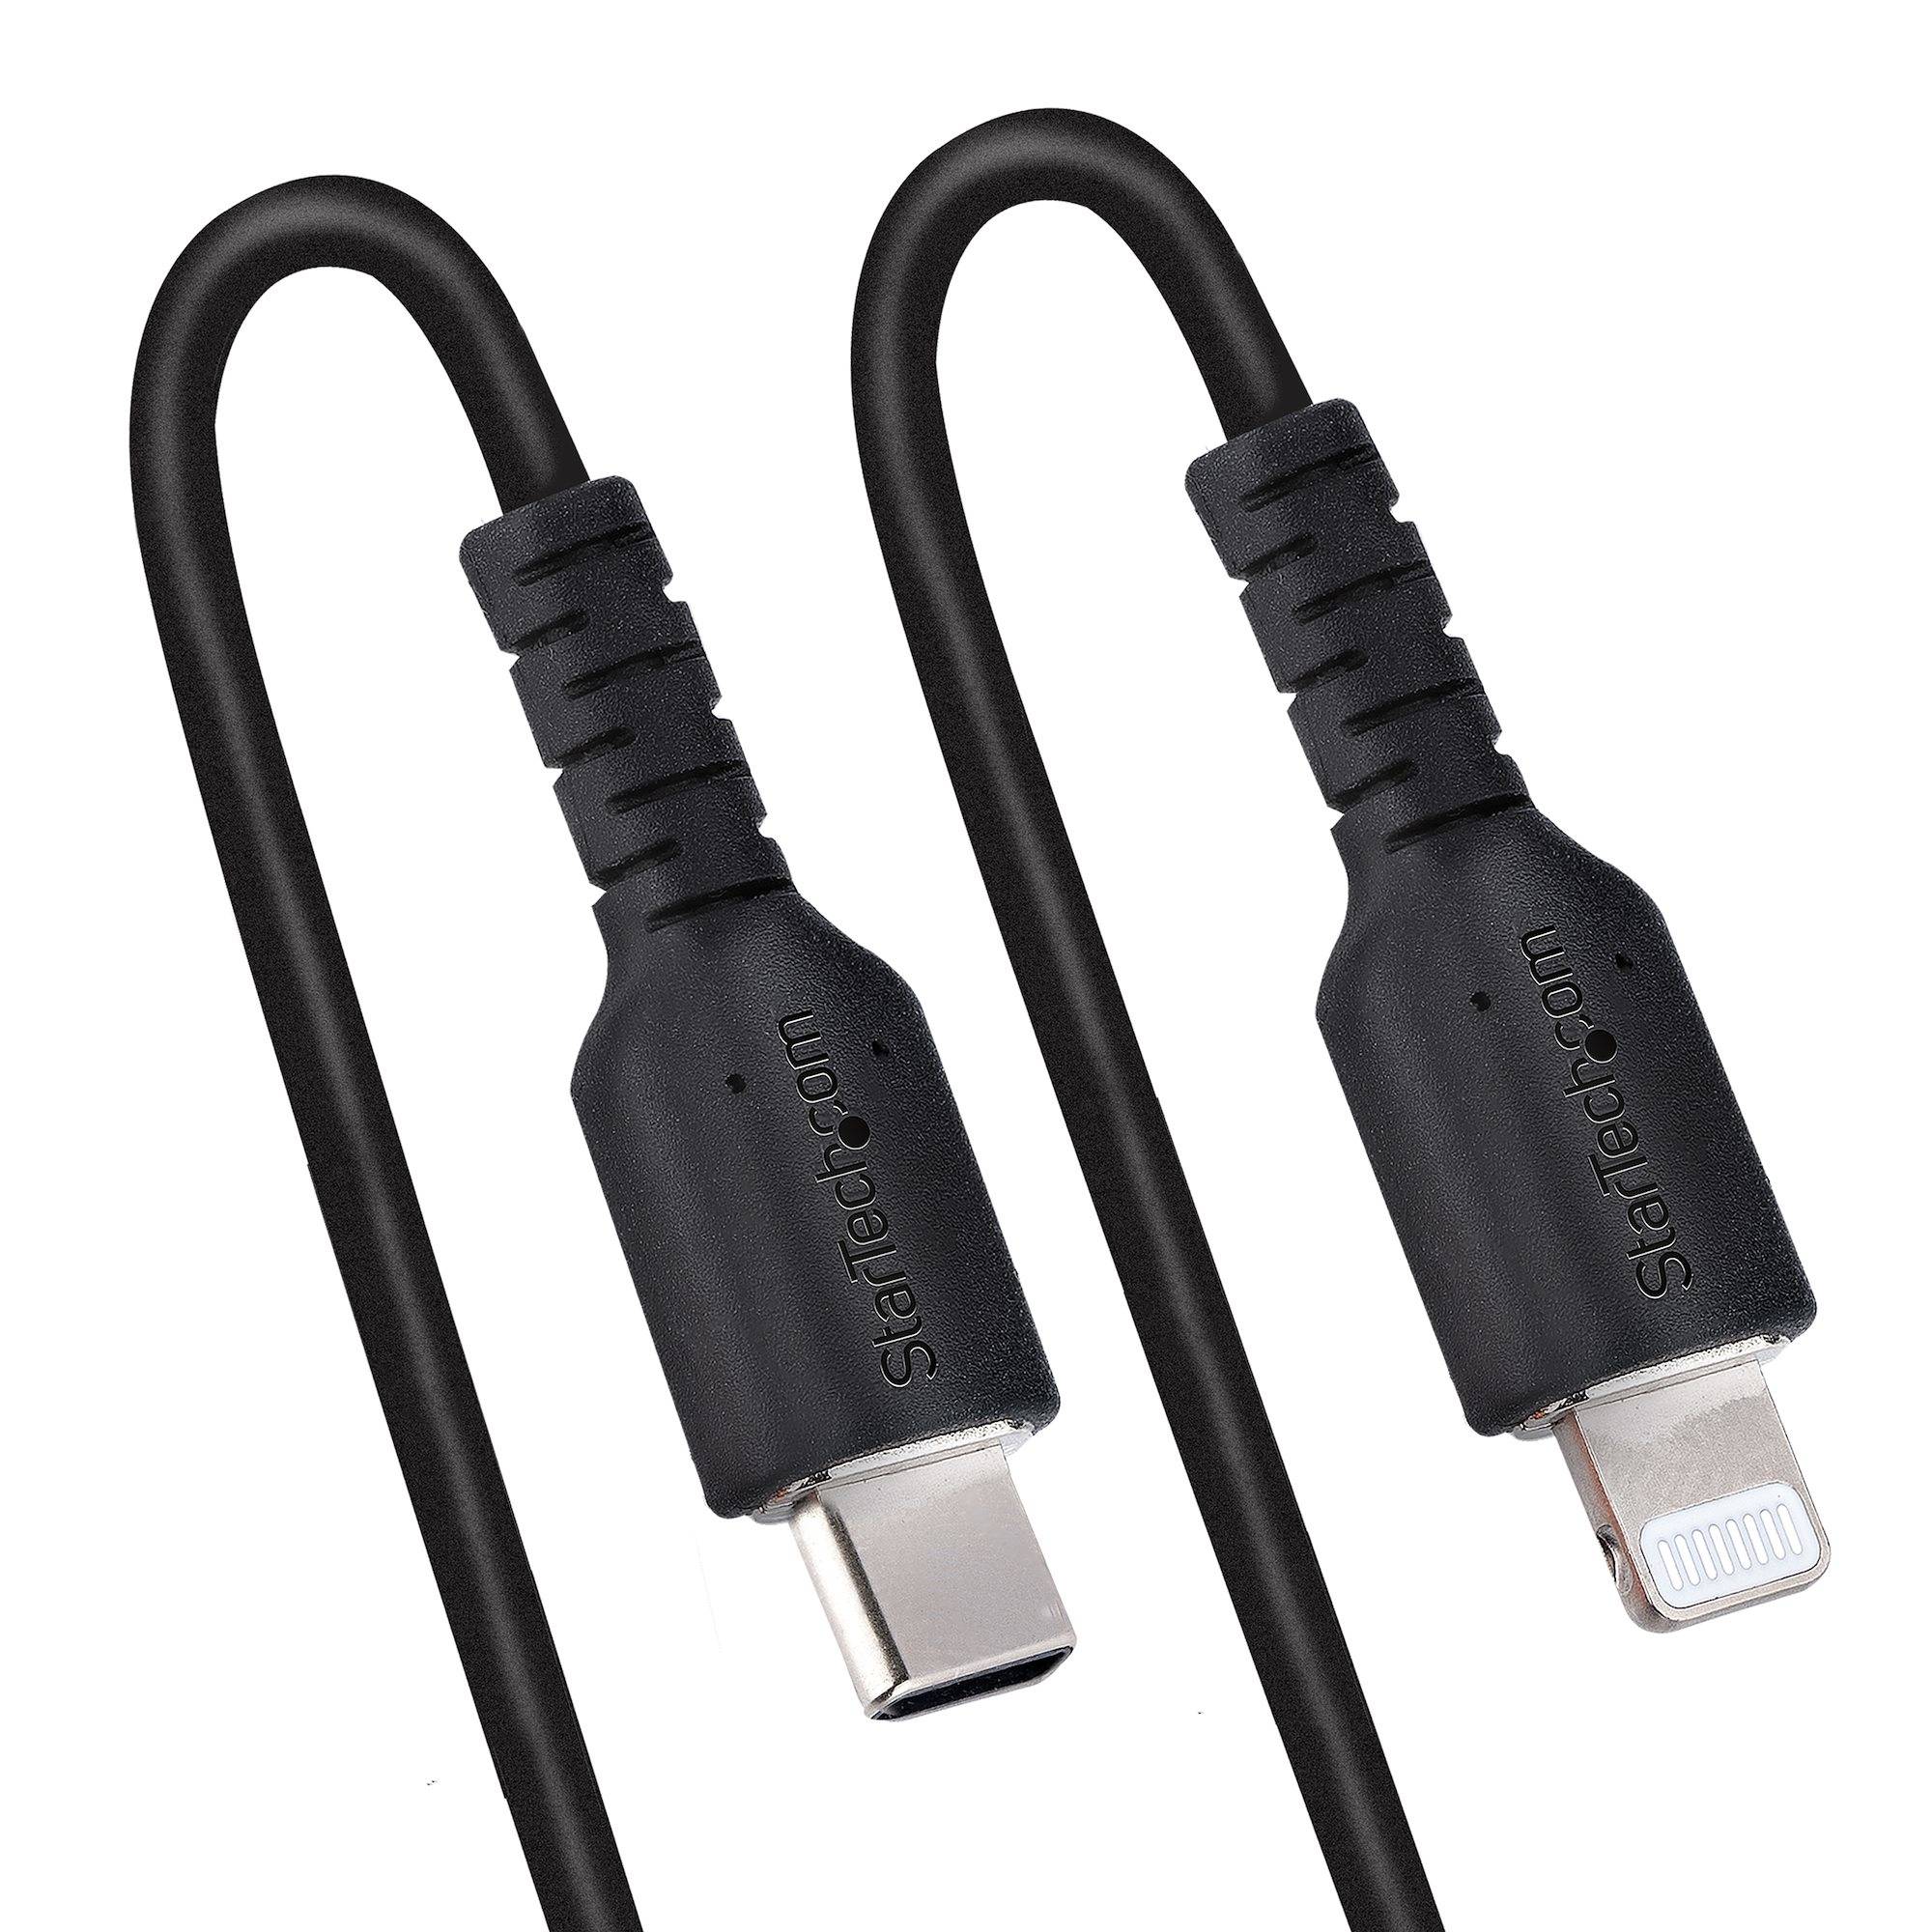 Rca Informatique - image du produit : USB C TO LIGHTNING CABLE - 1M (3.3FT) COILED CABLE BLACK